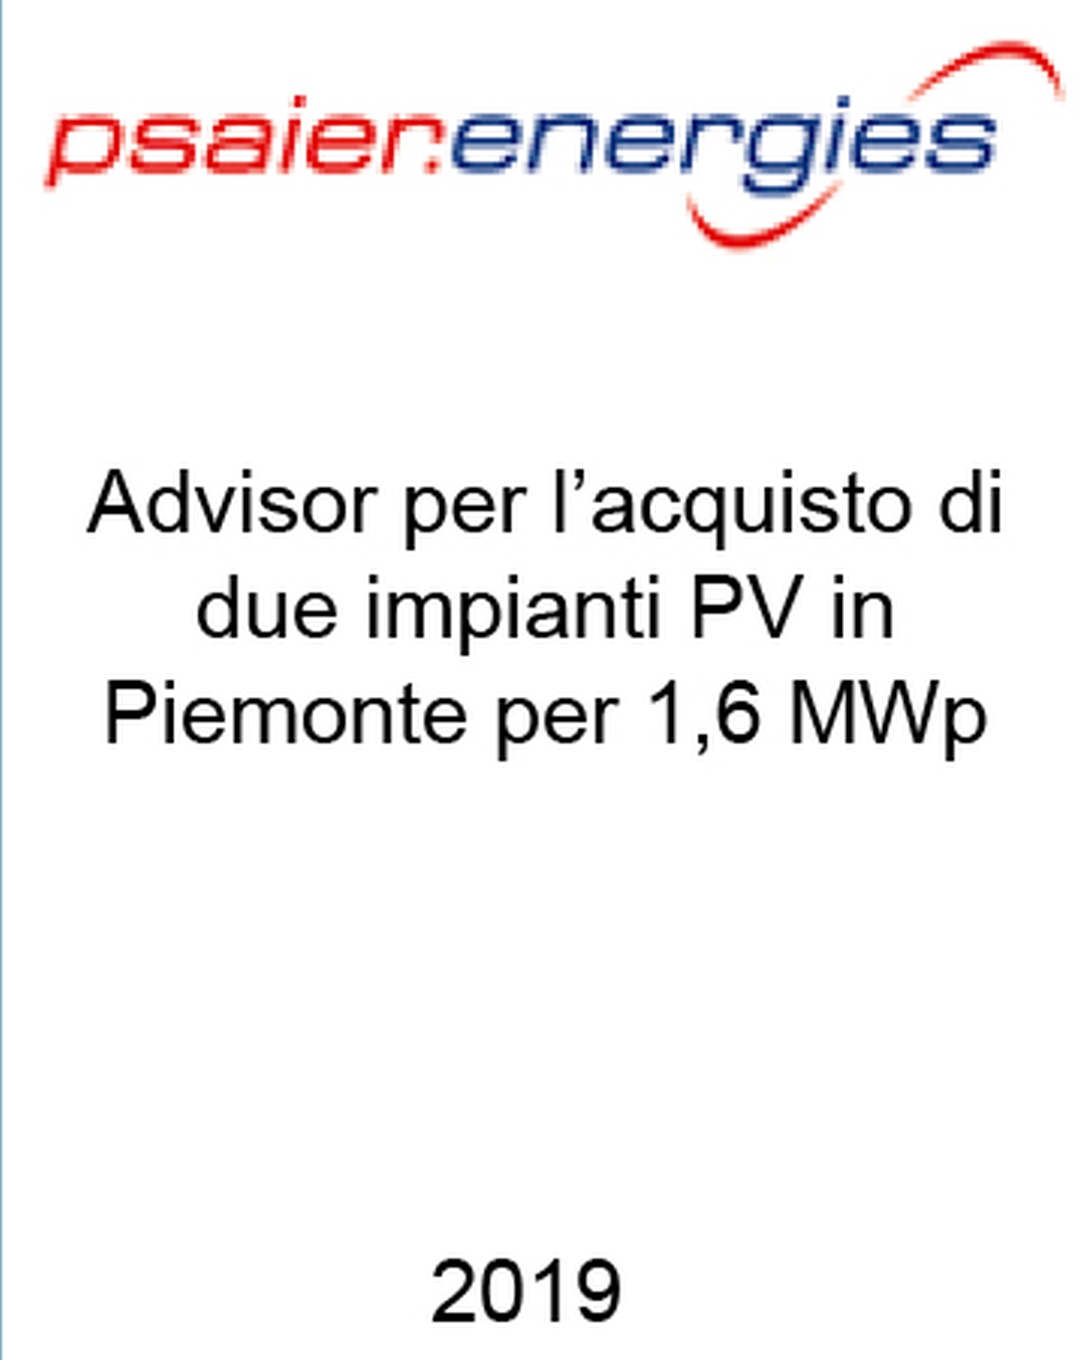 Consulente di Psaier.energies nell'acquisizione di 2 impianti fotovoltaici con FiT in Piemonte per una potenza complessiva di 1,6 MW. Ha agito in qualità di consulente dell'Acquirente. Incarico completato nel 2019.